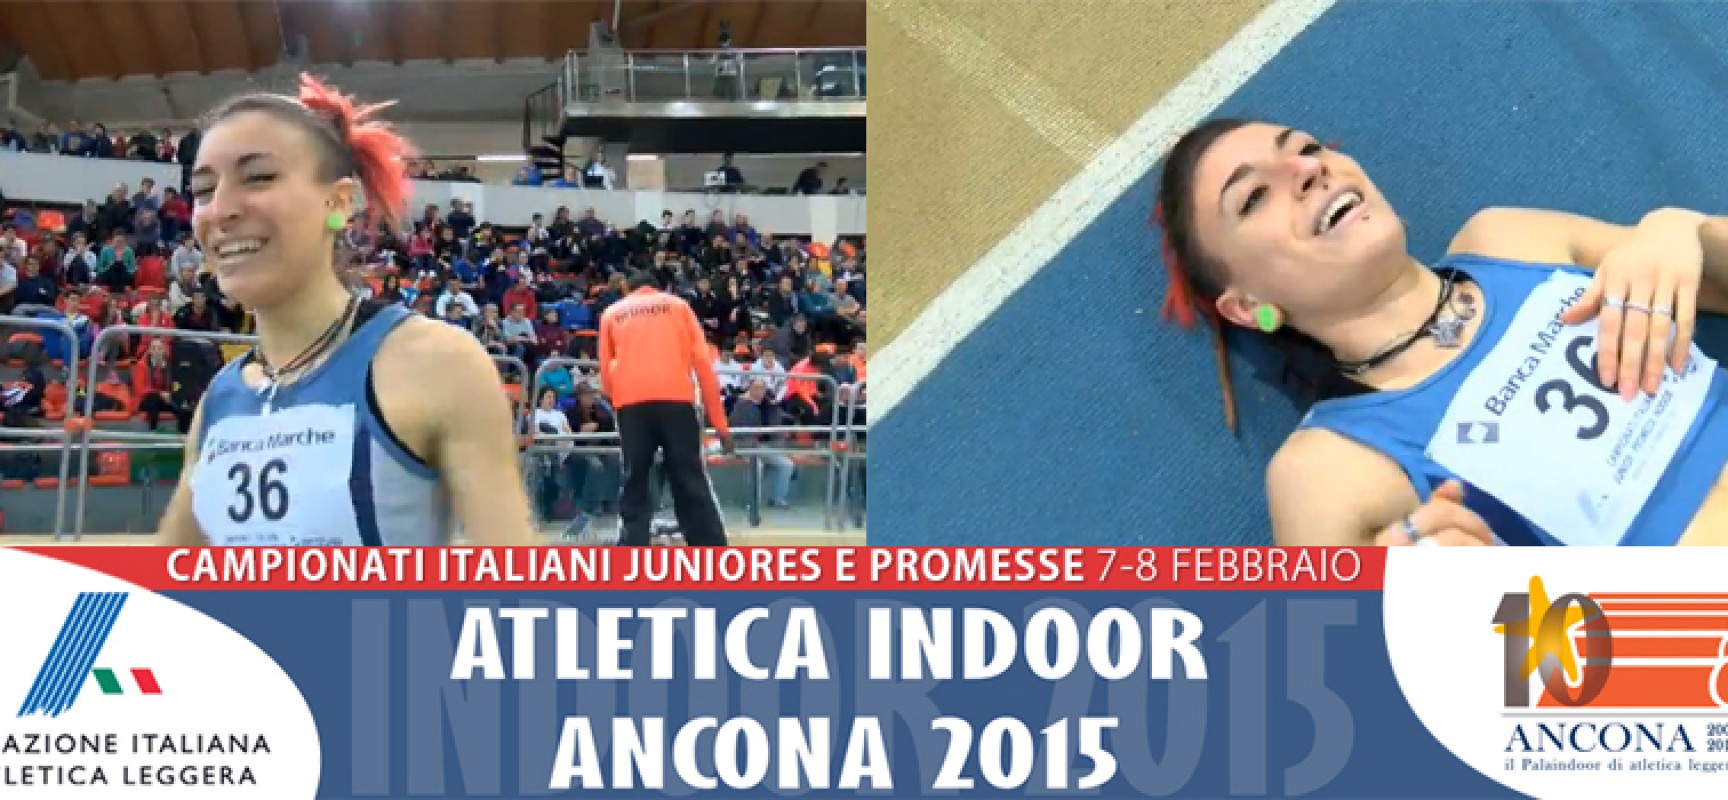 Lucia Pasquale campionessa italiana nei 400 metri indoor categoria Promesse / FOTO